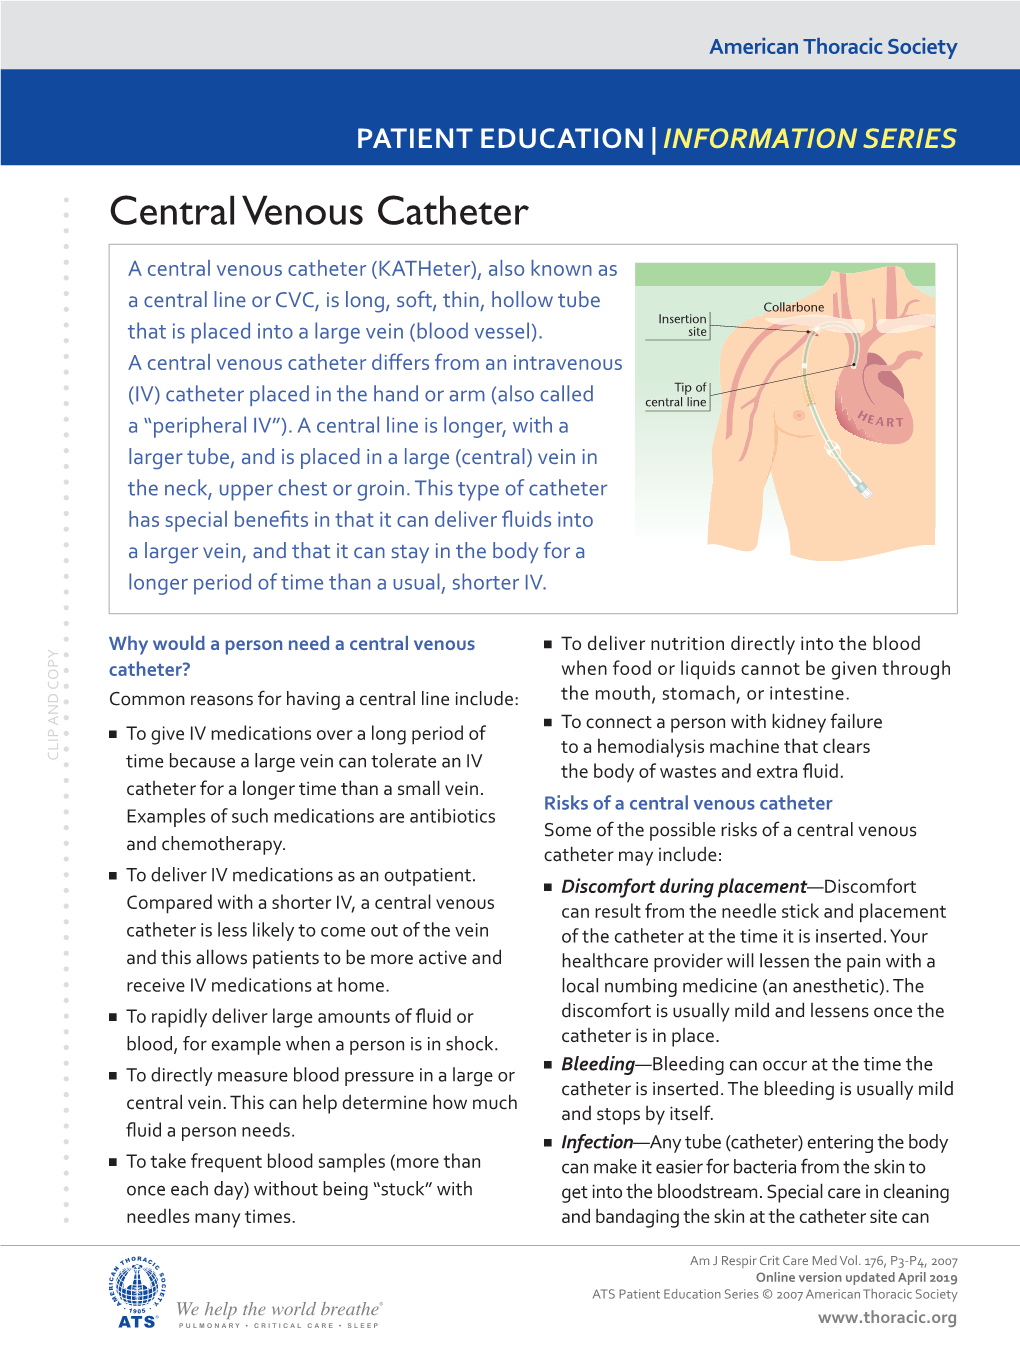 Central Venous Catheter (Central Line)